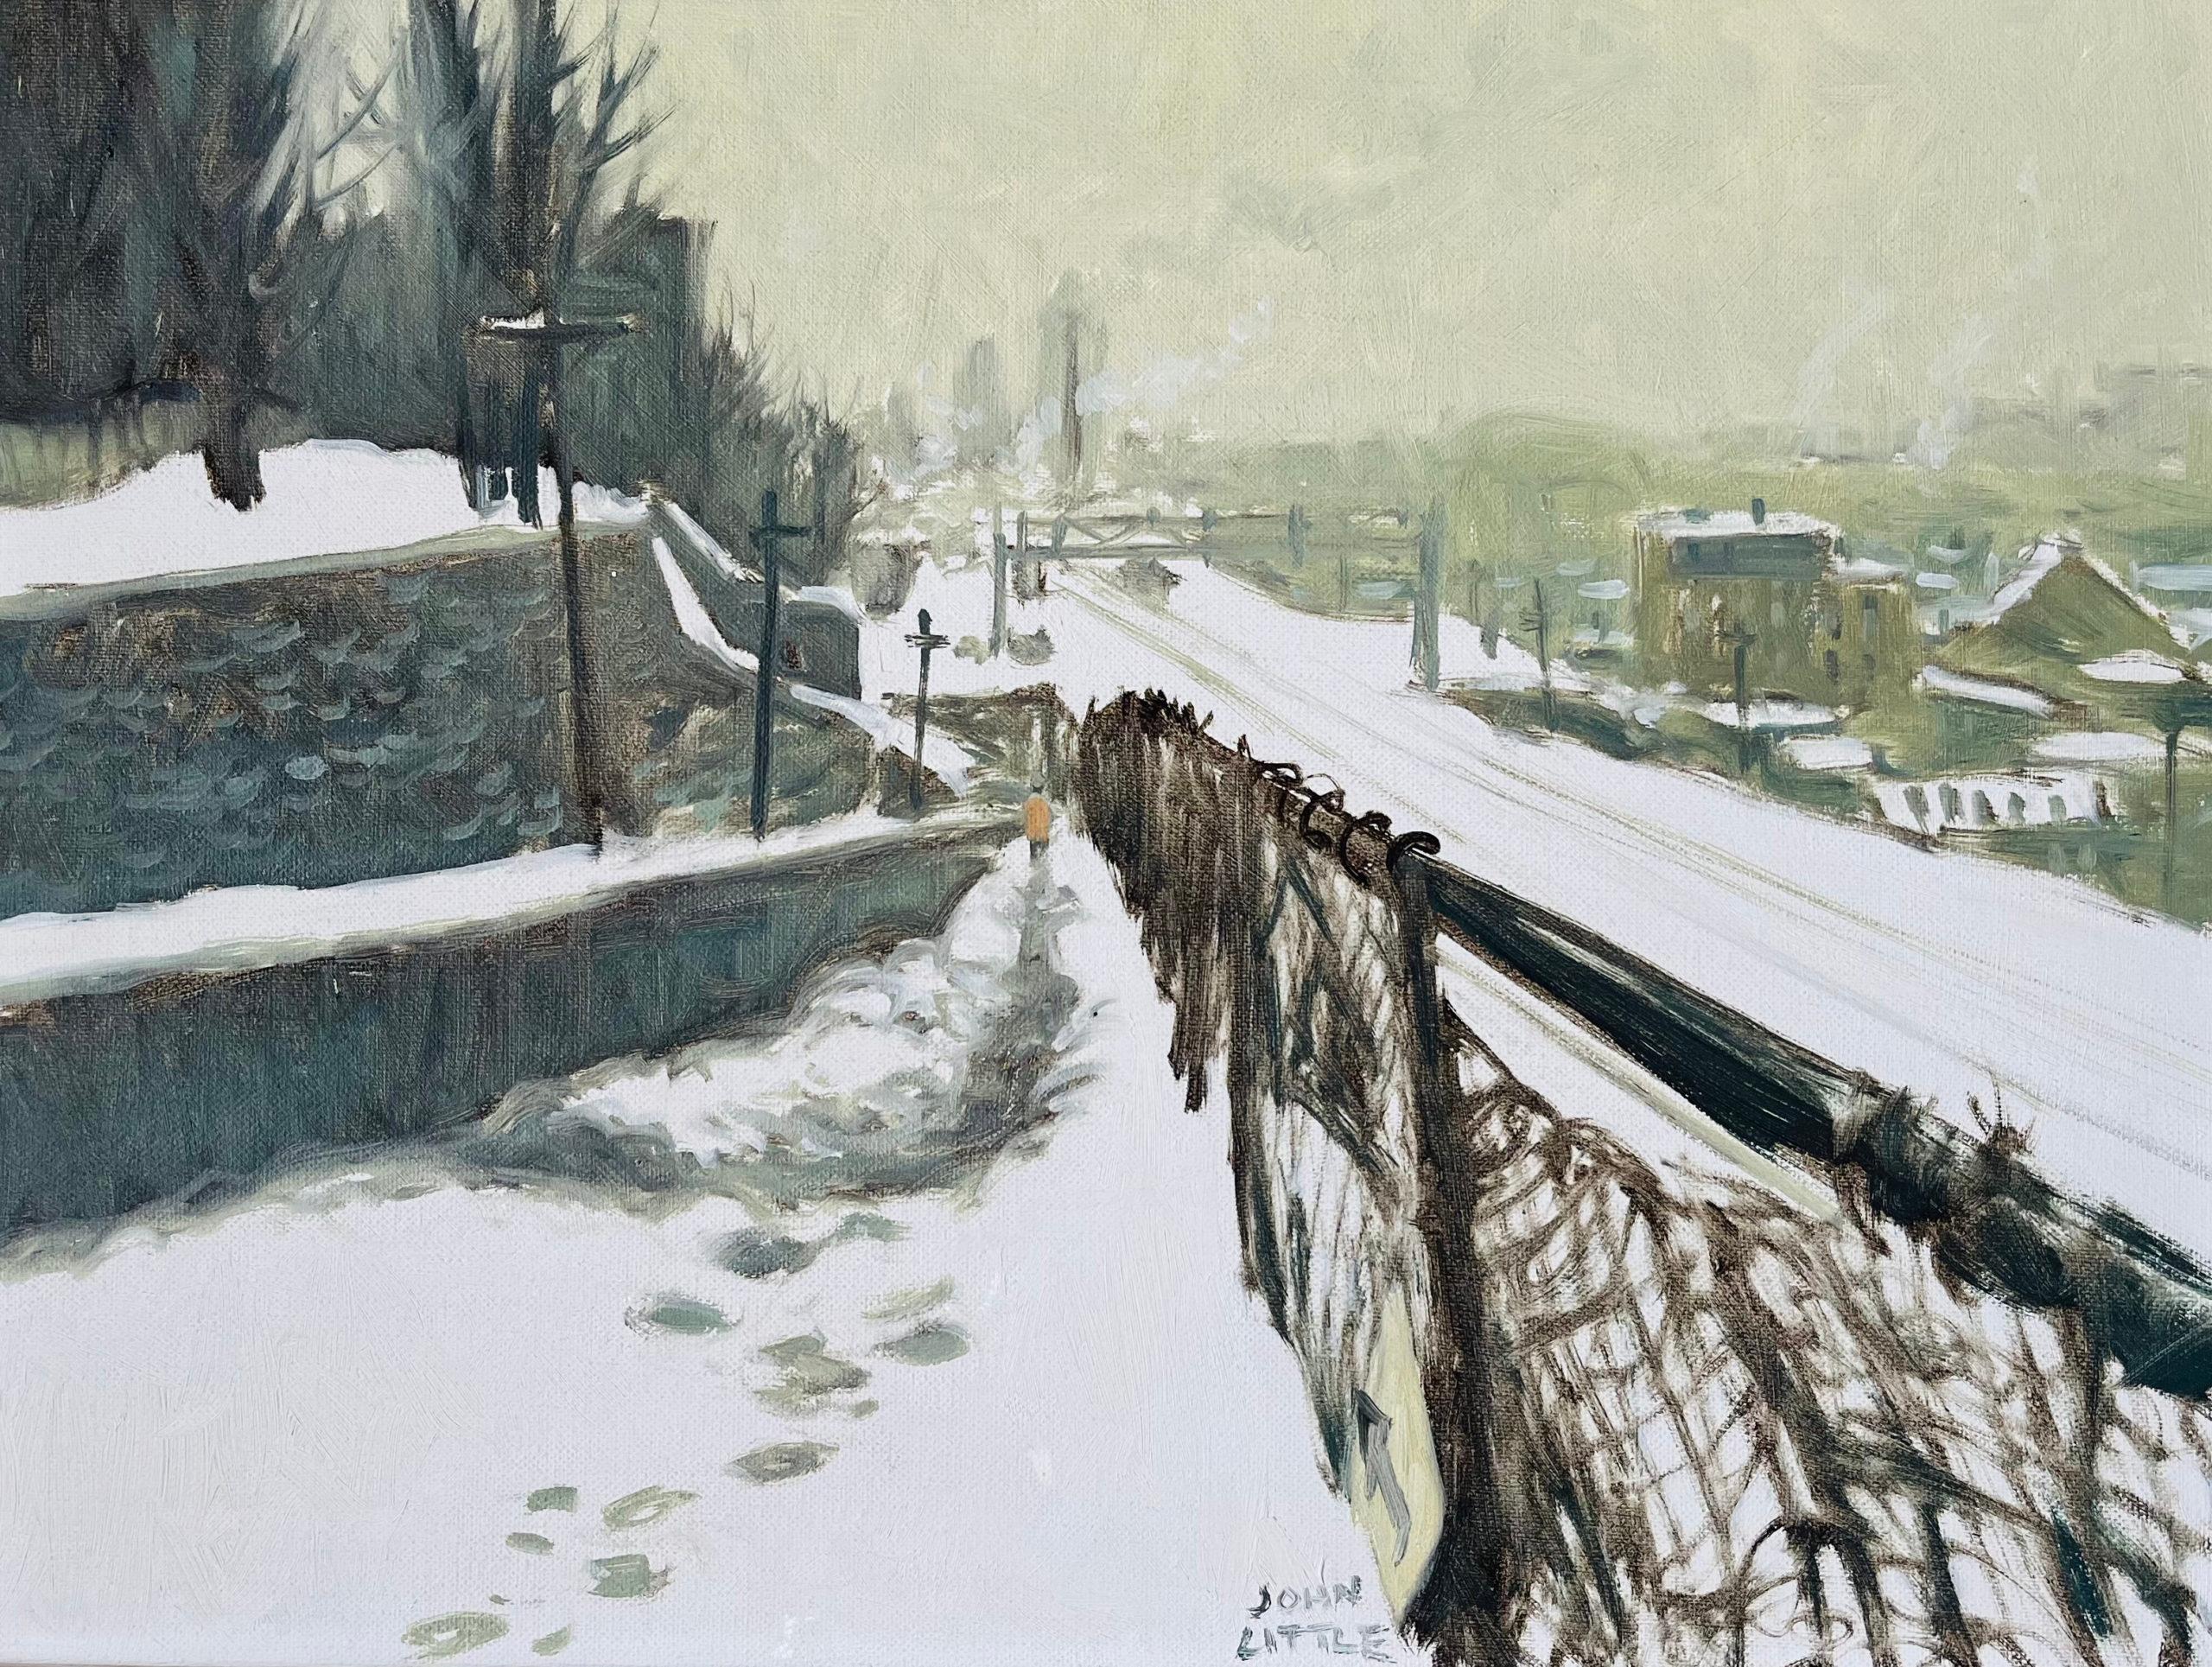 John Little Landscape Painting - Rue des Seigneurs, Montreal